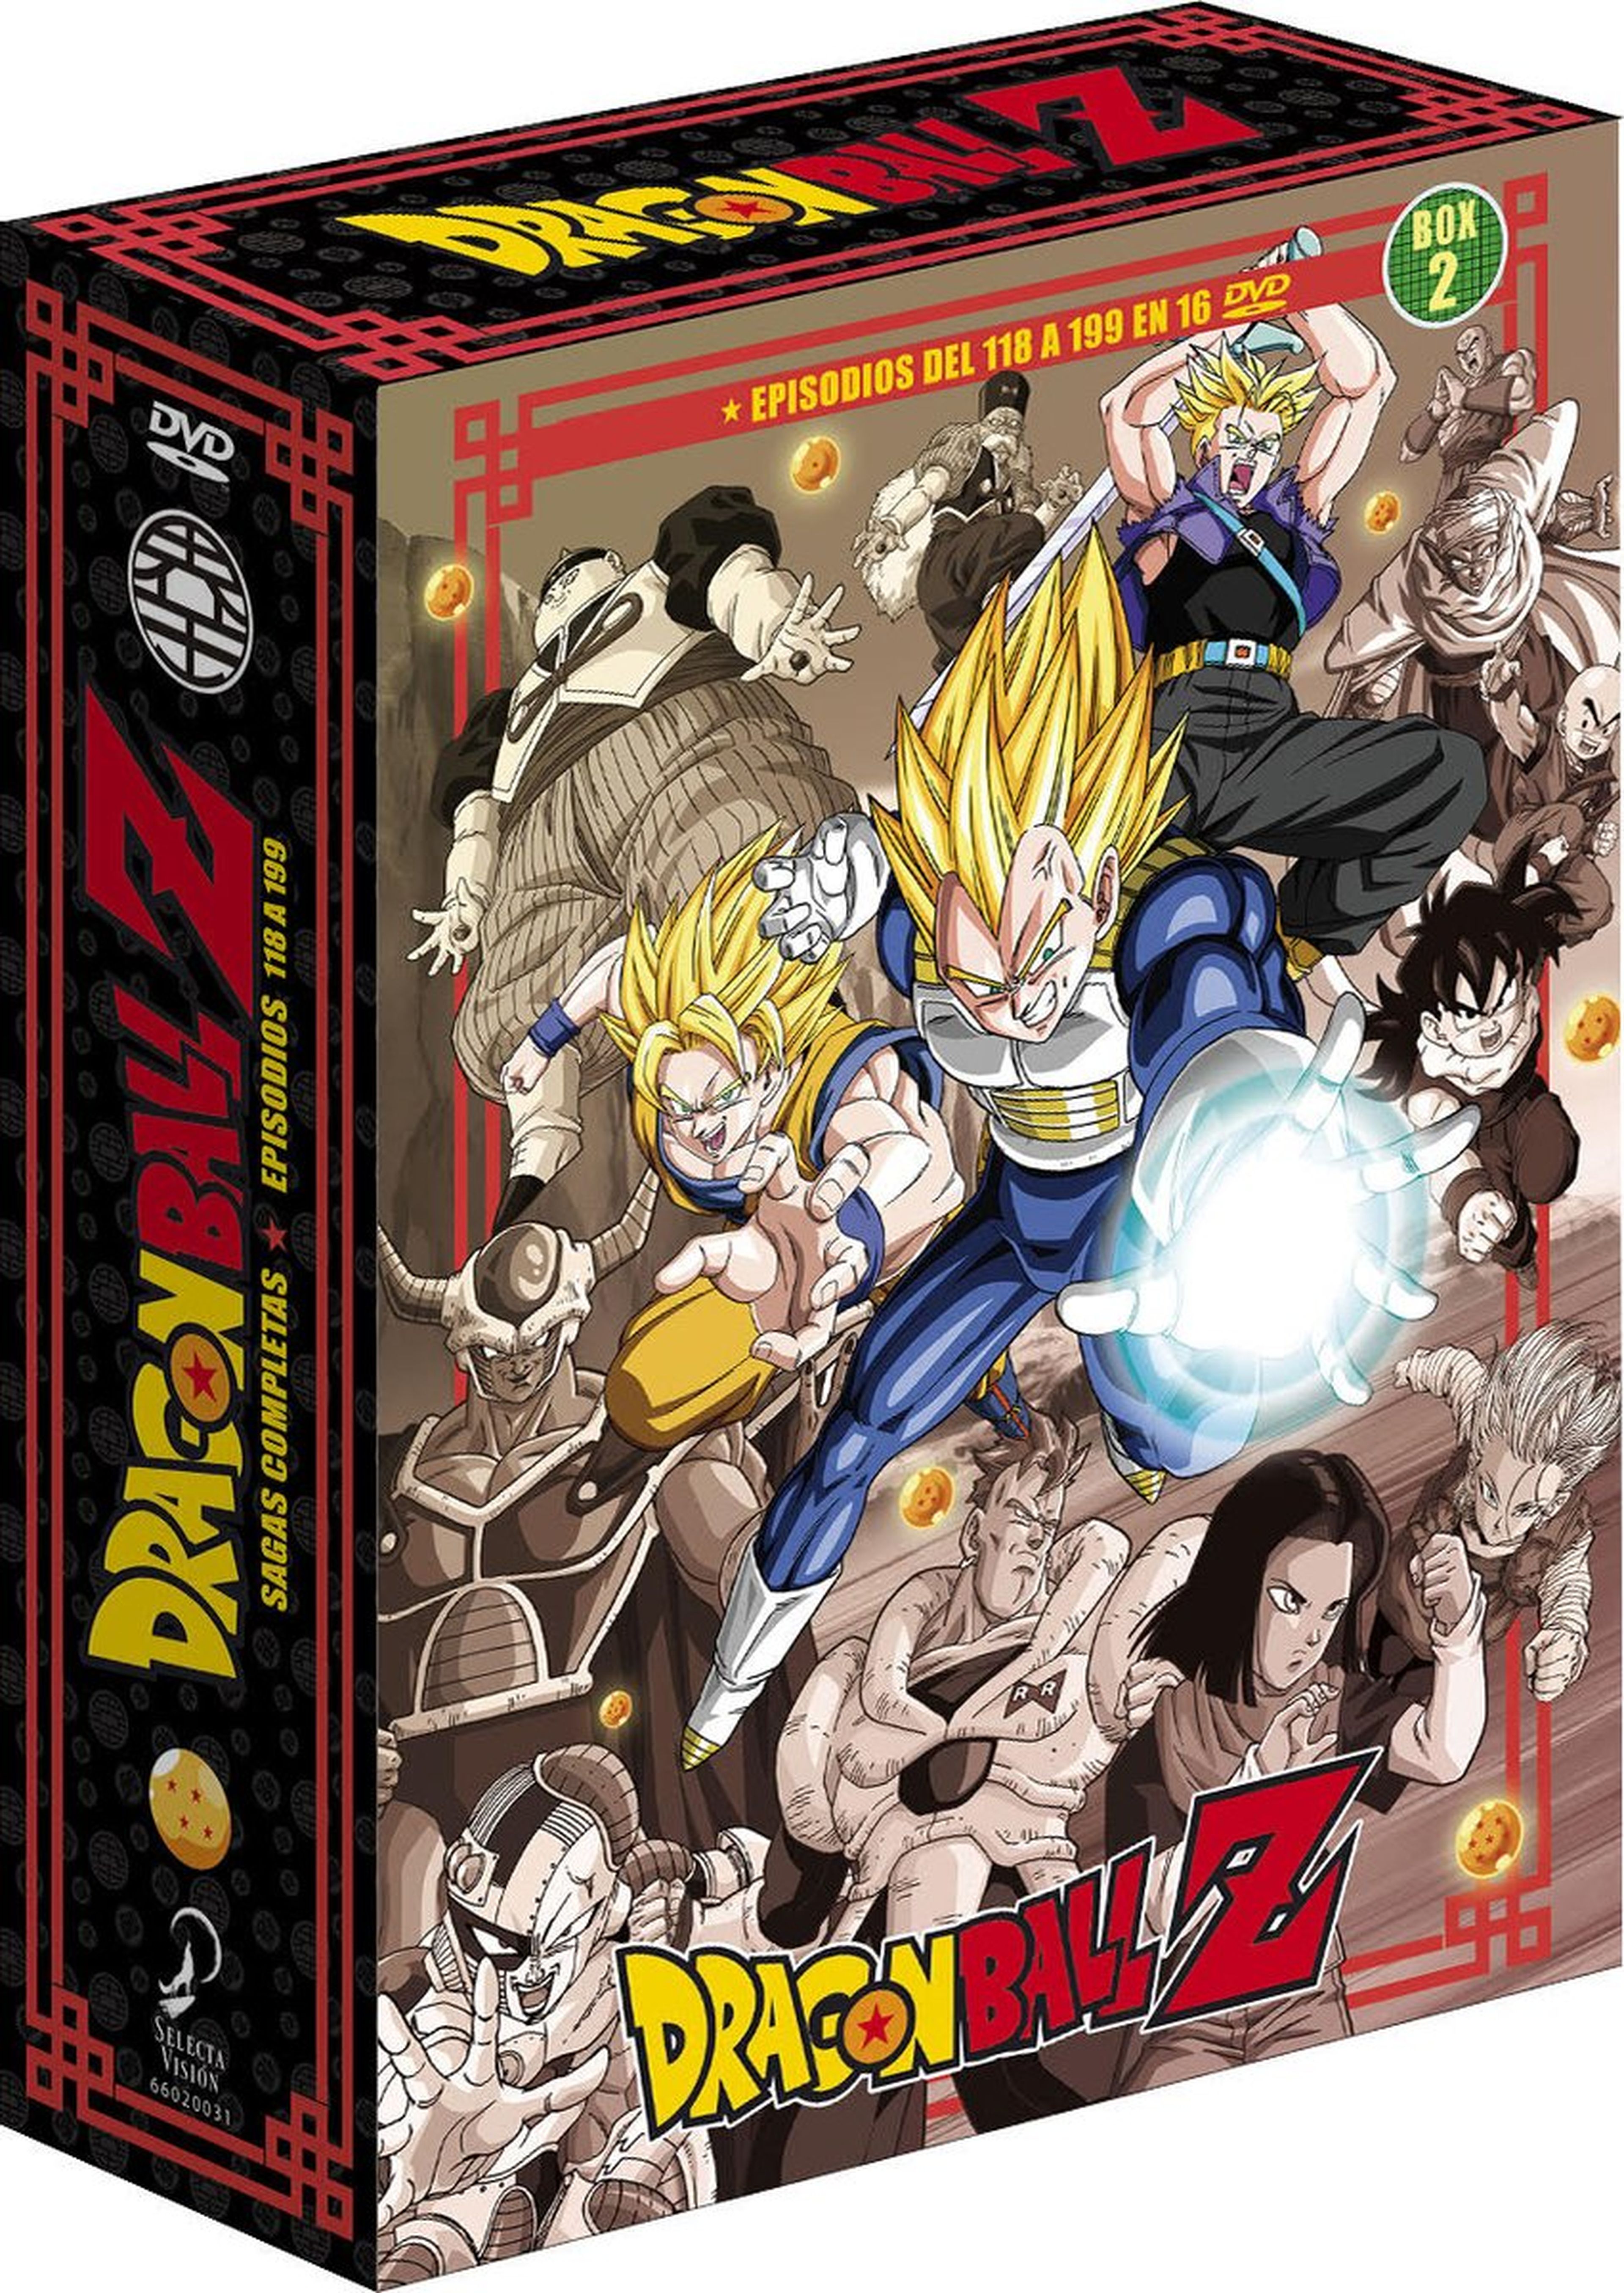 Dragon Ball Sagas Completas en DVD